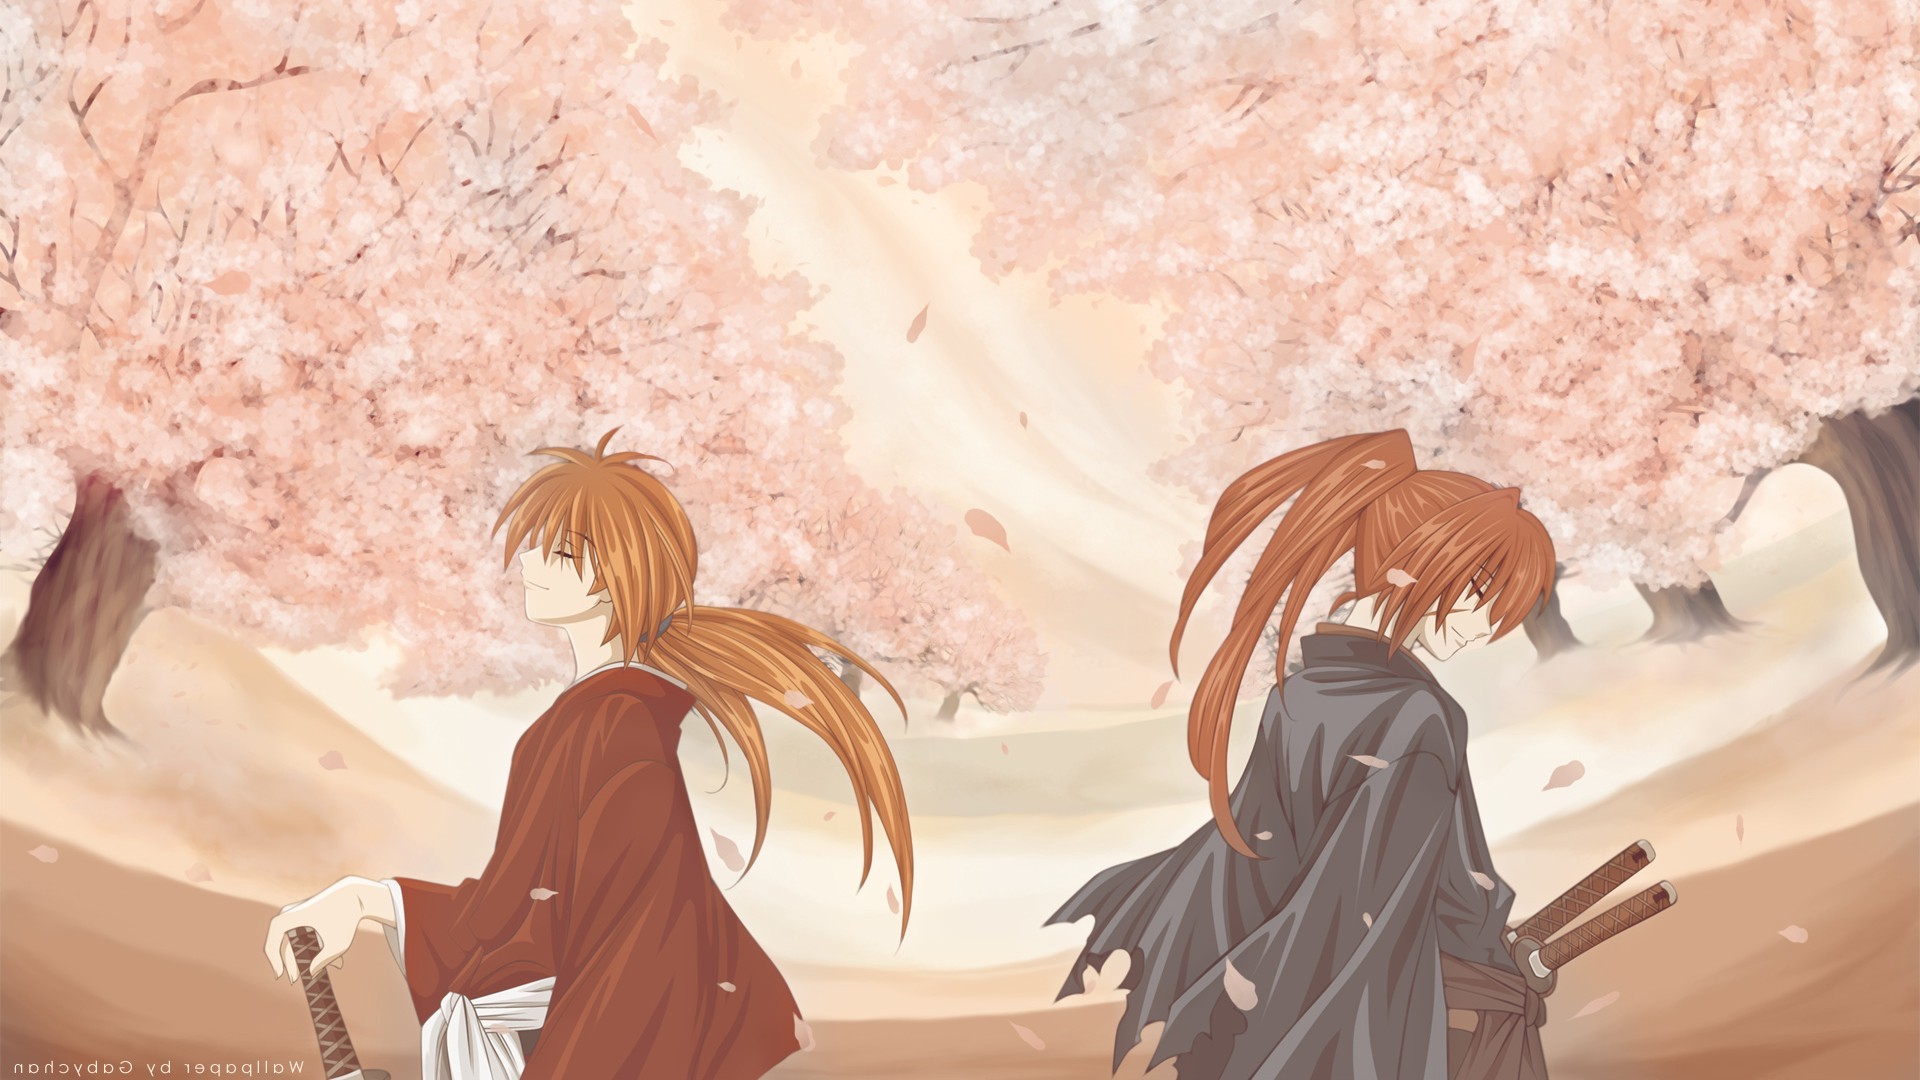 Rurouni Kenshin Wallpaper Hd 52 Images 